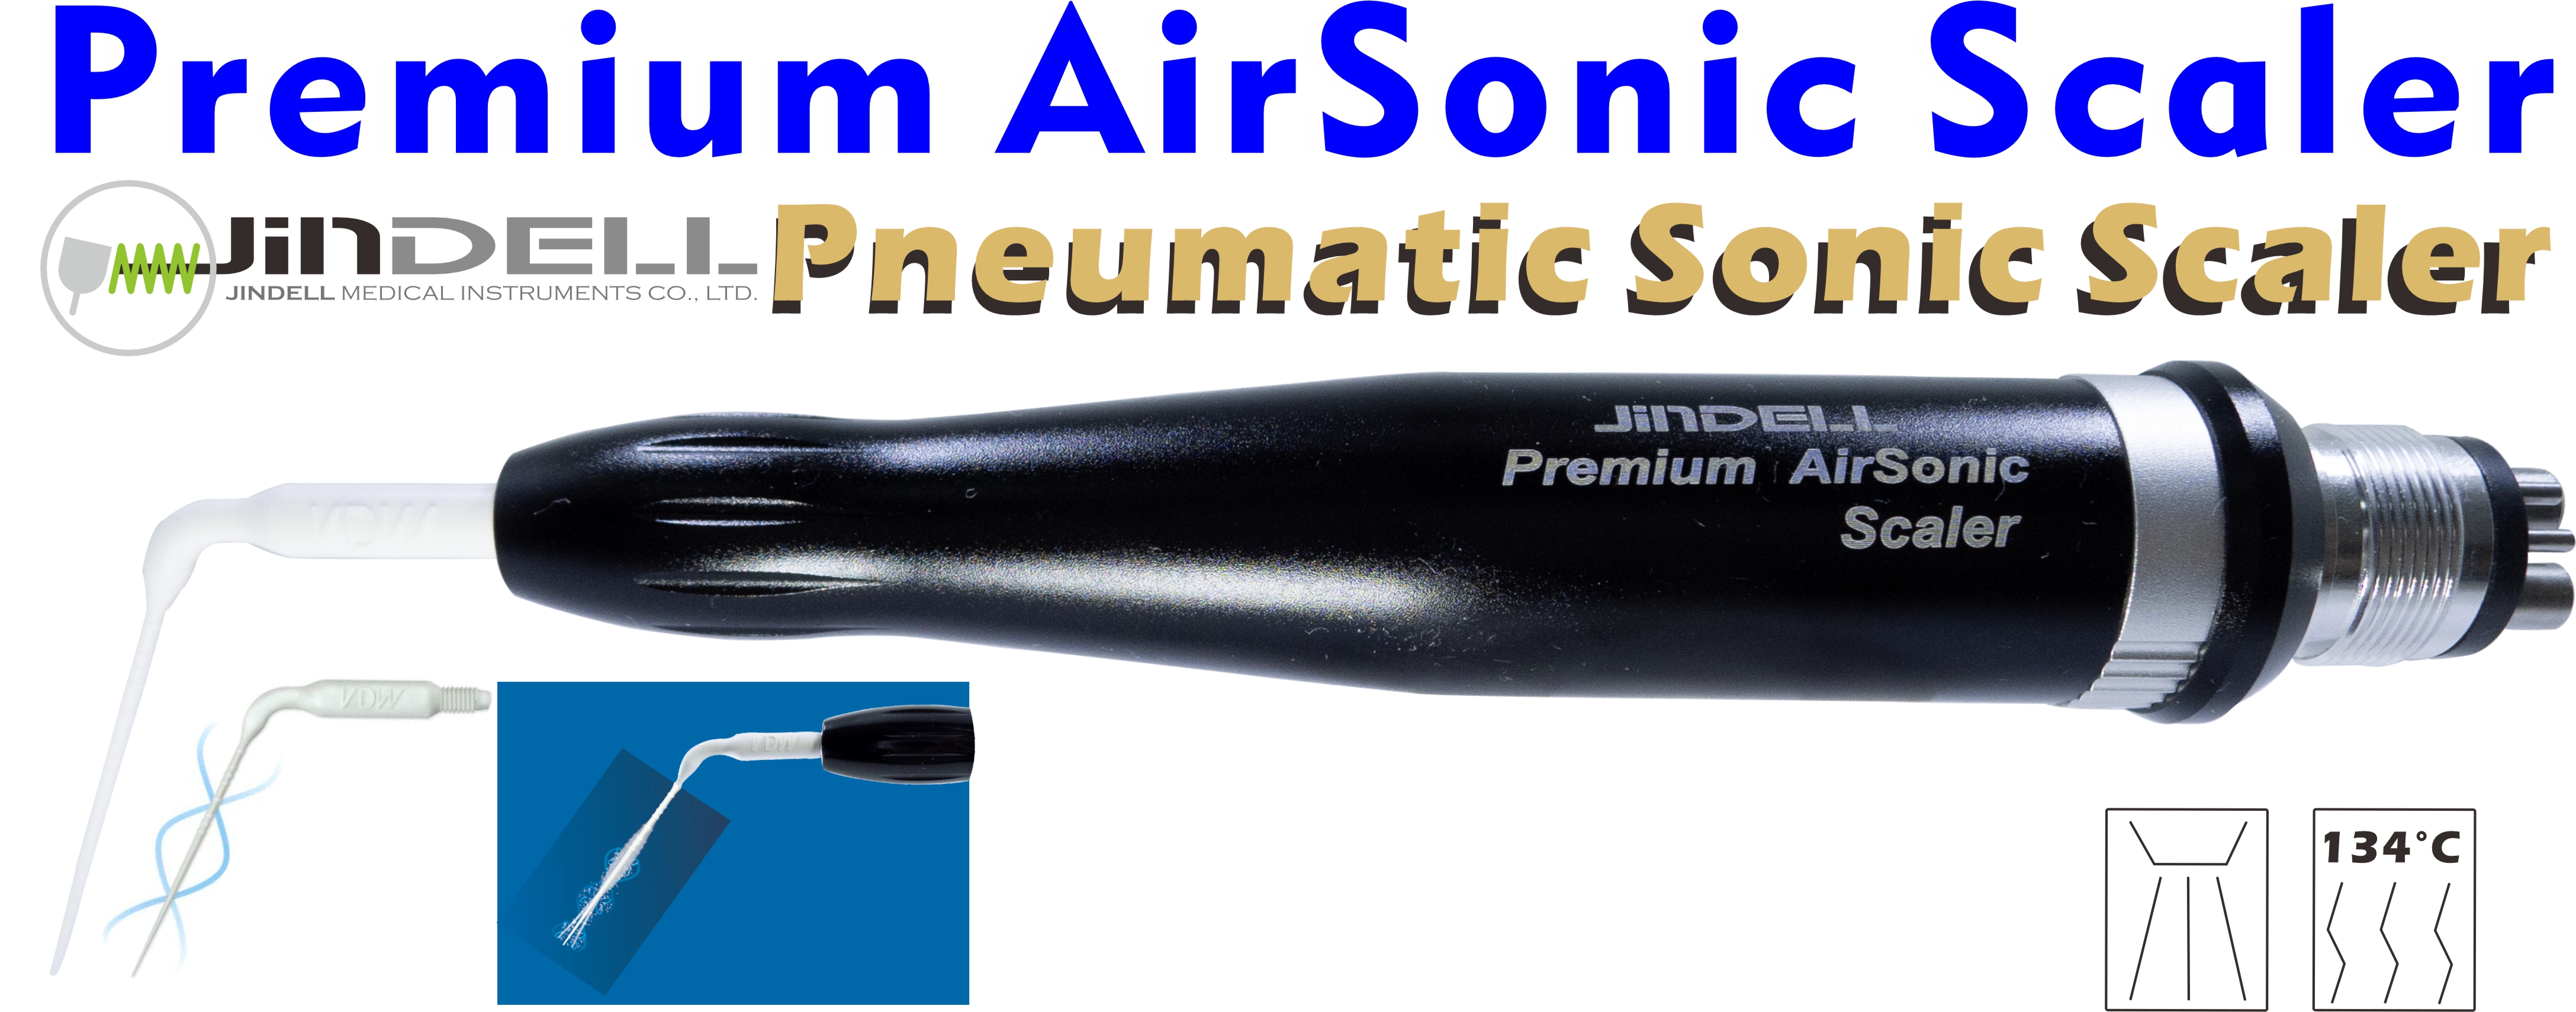 Premium AirSonic Scaler-VDW Eddy Tip